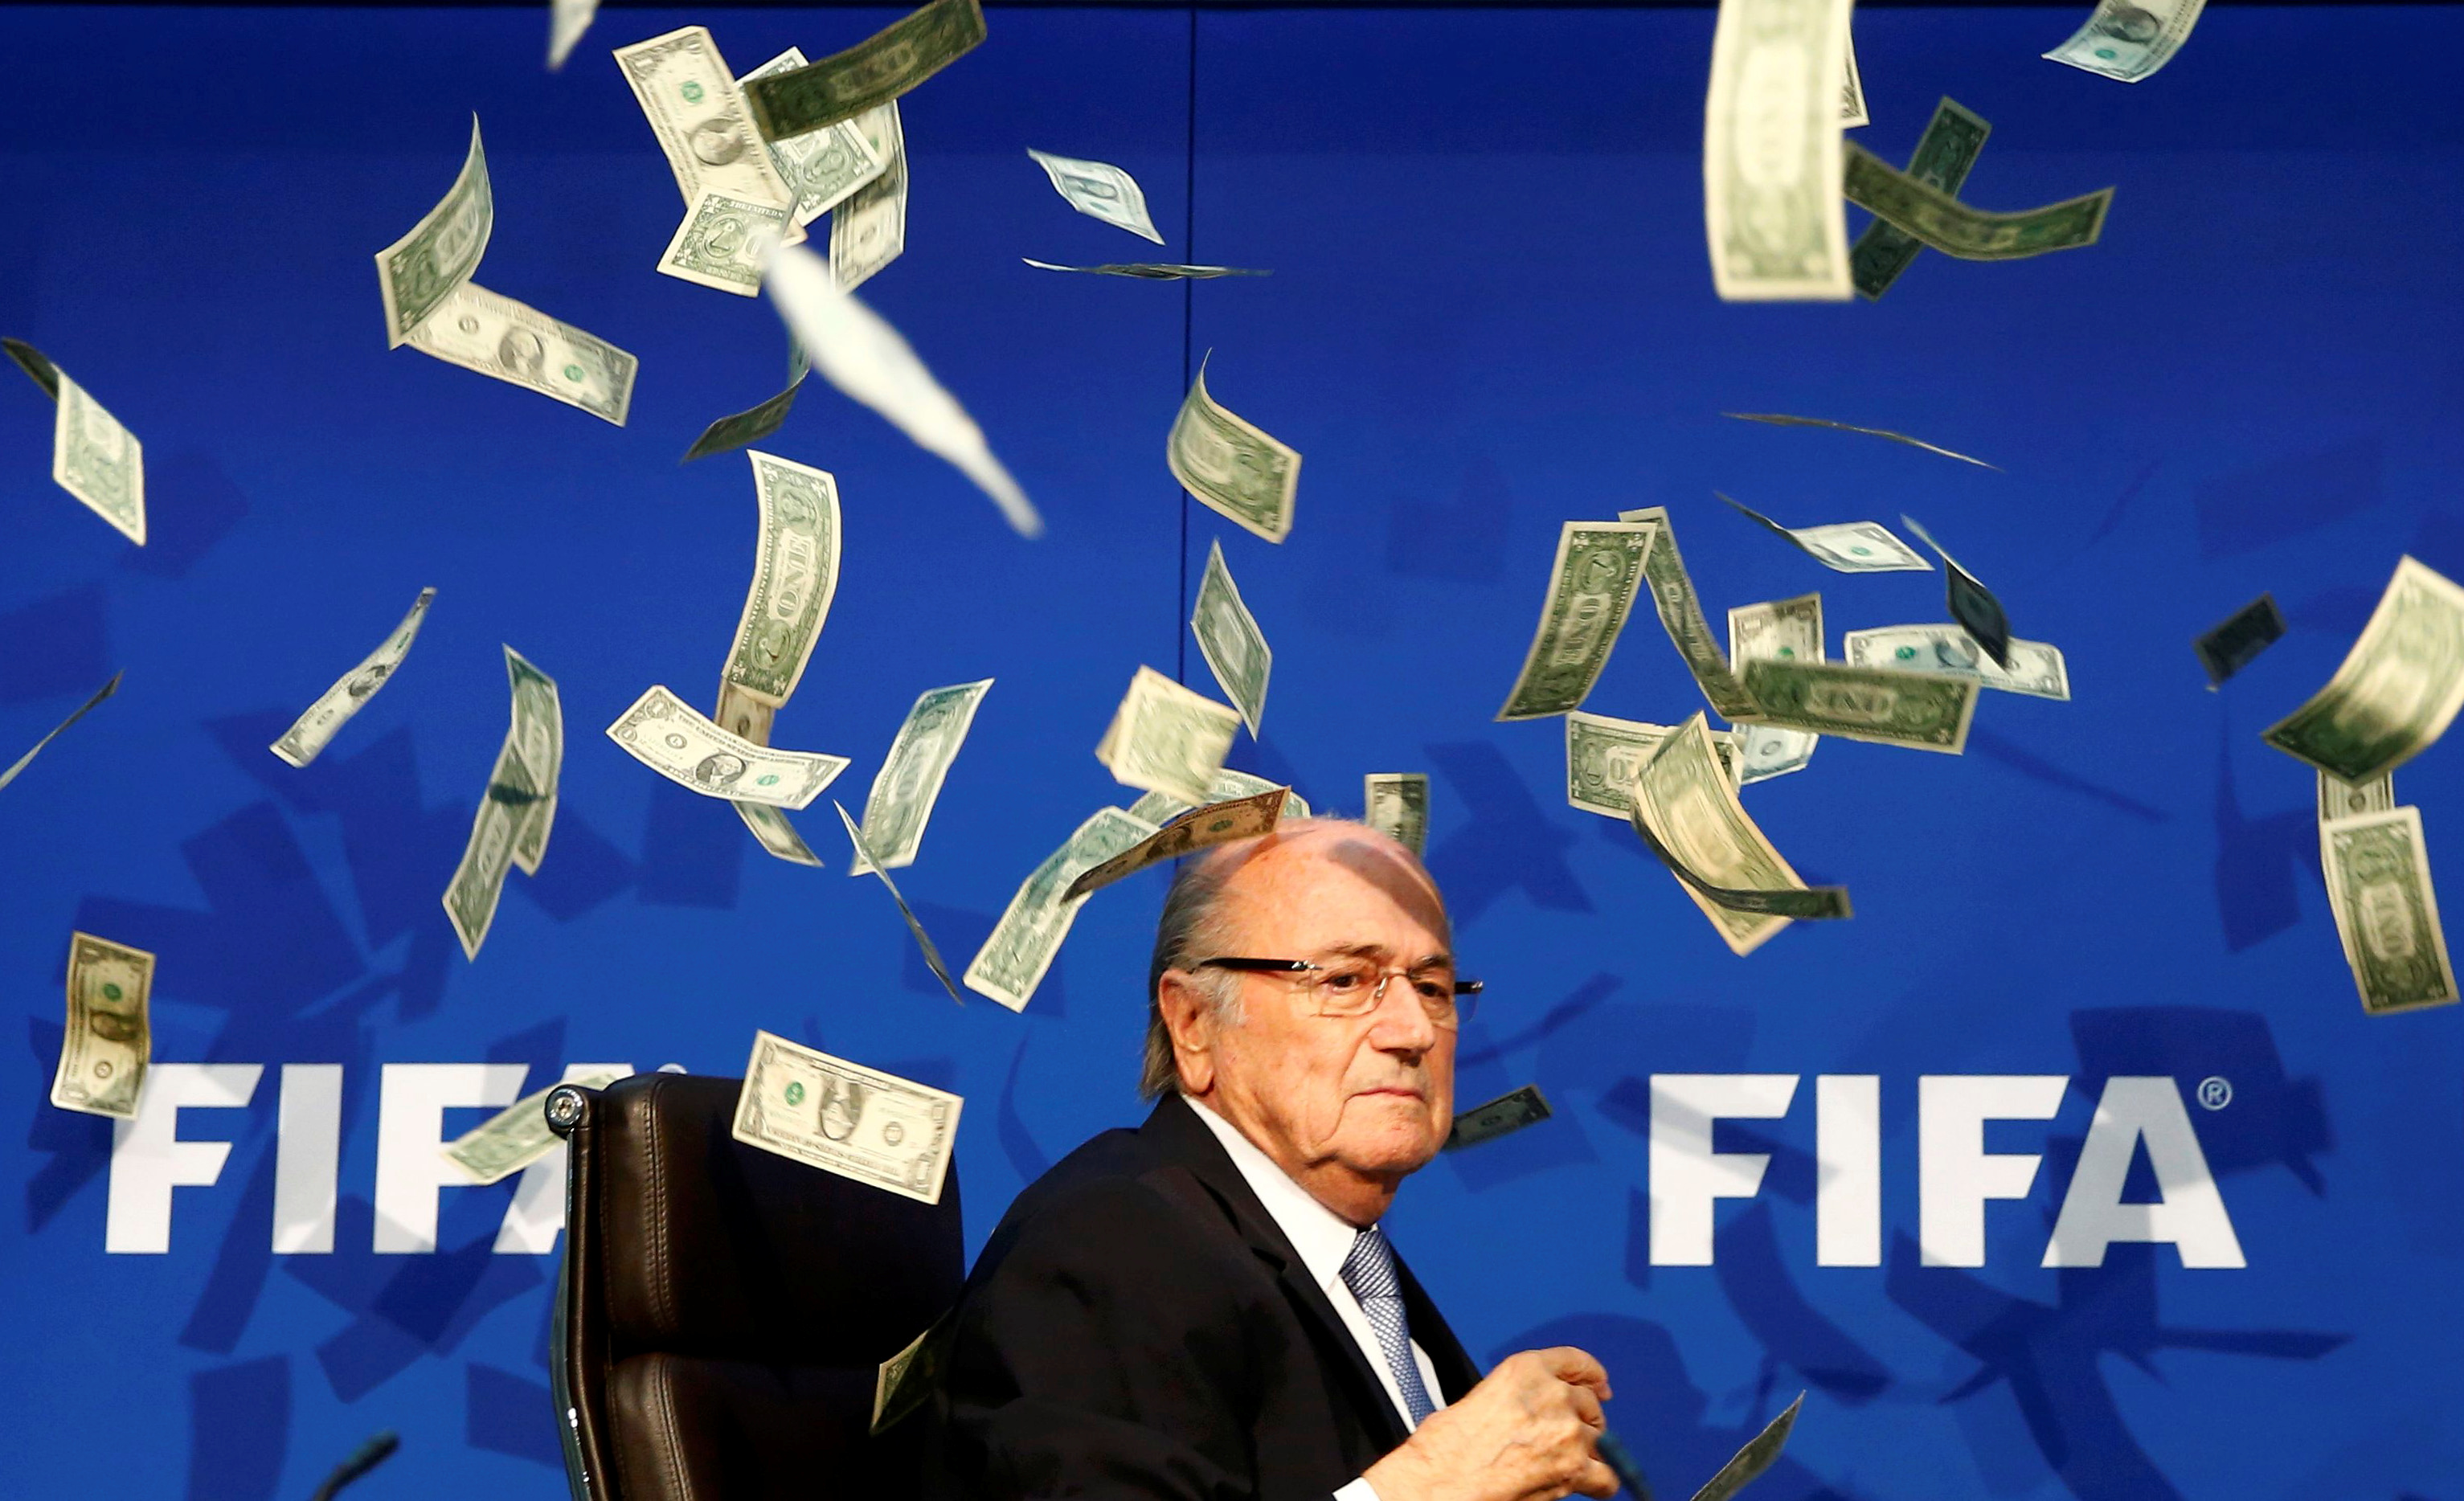 Νέο σκάνδαλο με FIFA! Πρώην πρόεδρος δωροδοκήθηκε για να δώσει το Μουντιάλ του 2018 στη Ρωσία